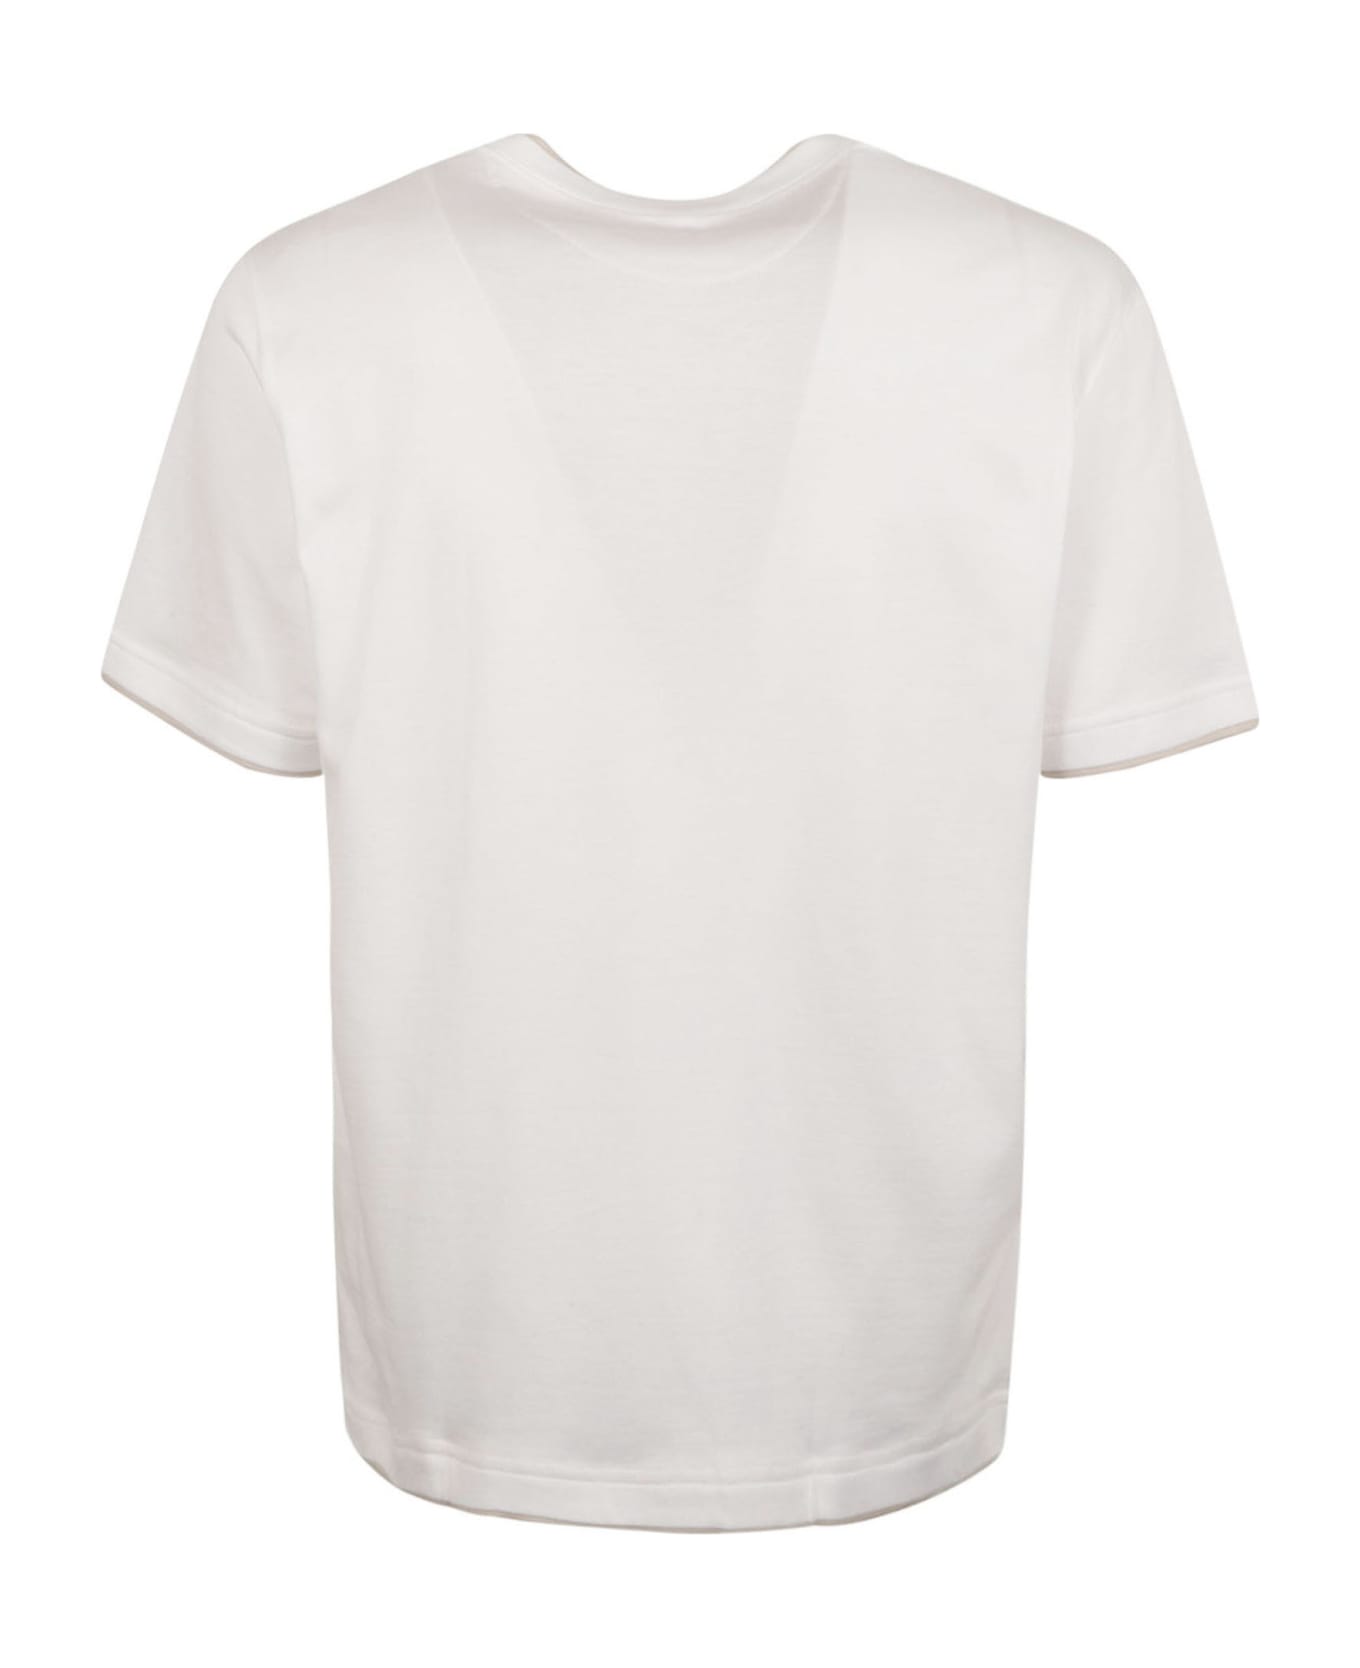 Eleventy Round Neck Plain T-shirt - White